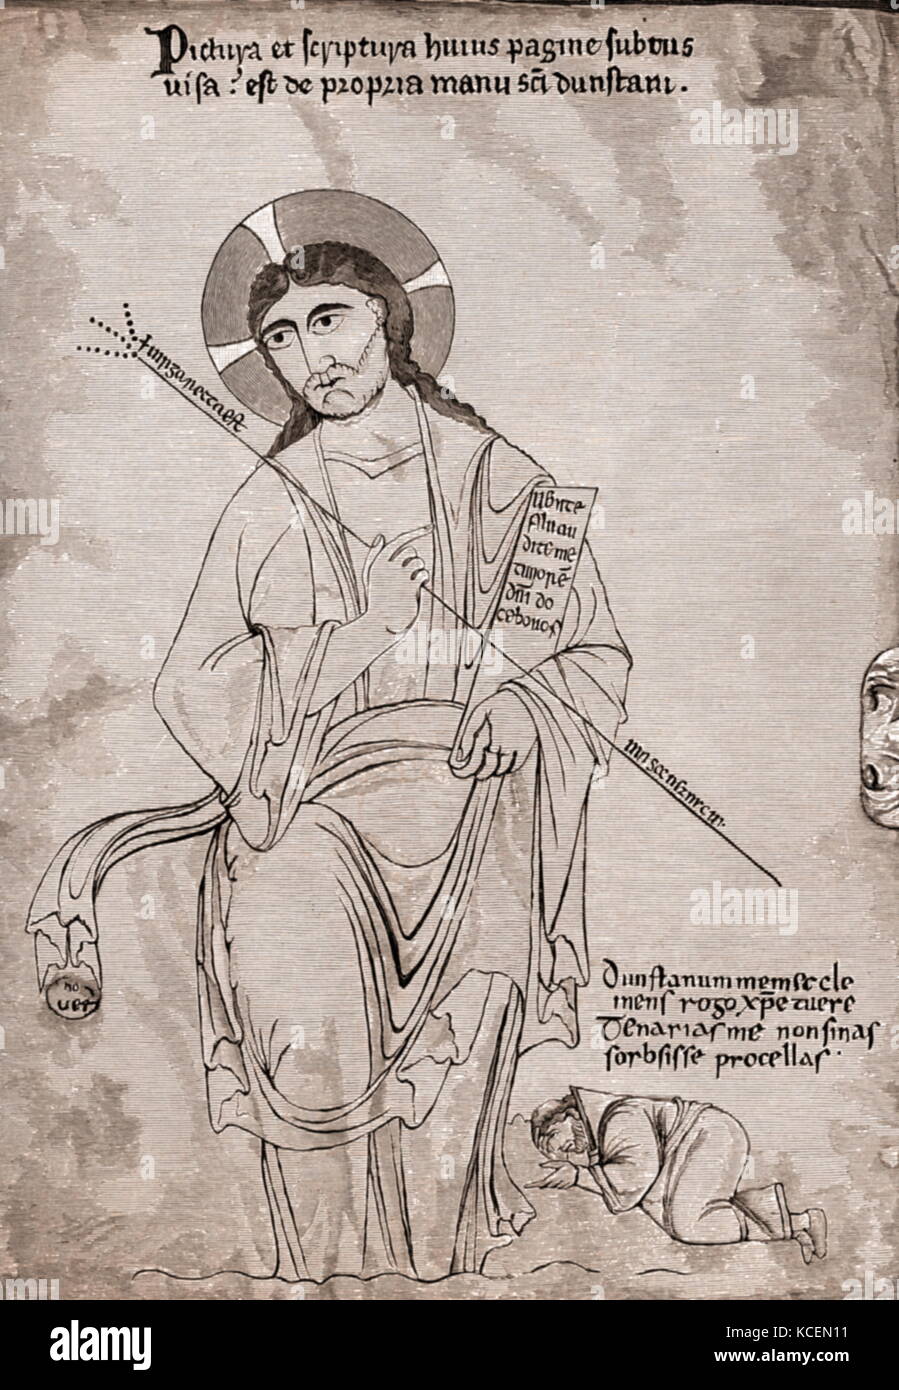 San Dunstan, a los pies de Cristo. Dunstan (909 - 19 de mayo de 988 AD) fue un abad de la Abadía de Glastonbury, Obispo de Worcester, Obispo de Londres, y el Arzobispo de Canterbury, posteriormente canonizado como un santo. Su trabajo restauró la vida monástica en Inglaterra y la reforma de la Iglesia inglesa. Su biógrafo 11th-century, Osbern, un artista y scribe, estados que Dunstan era experto en "hacer una foto y formando las letras", así como otros sacerdotes de su edad que alcanzó alto rango Foto de stock